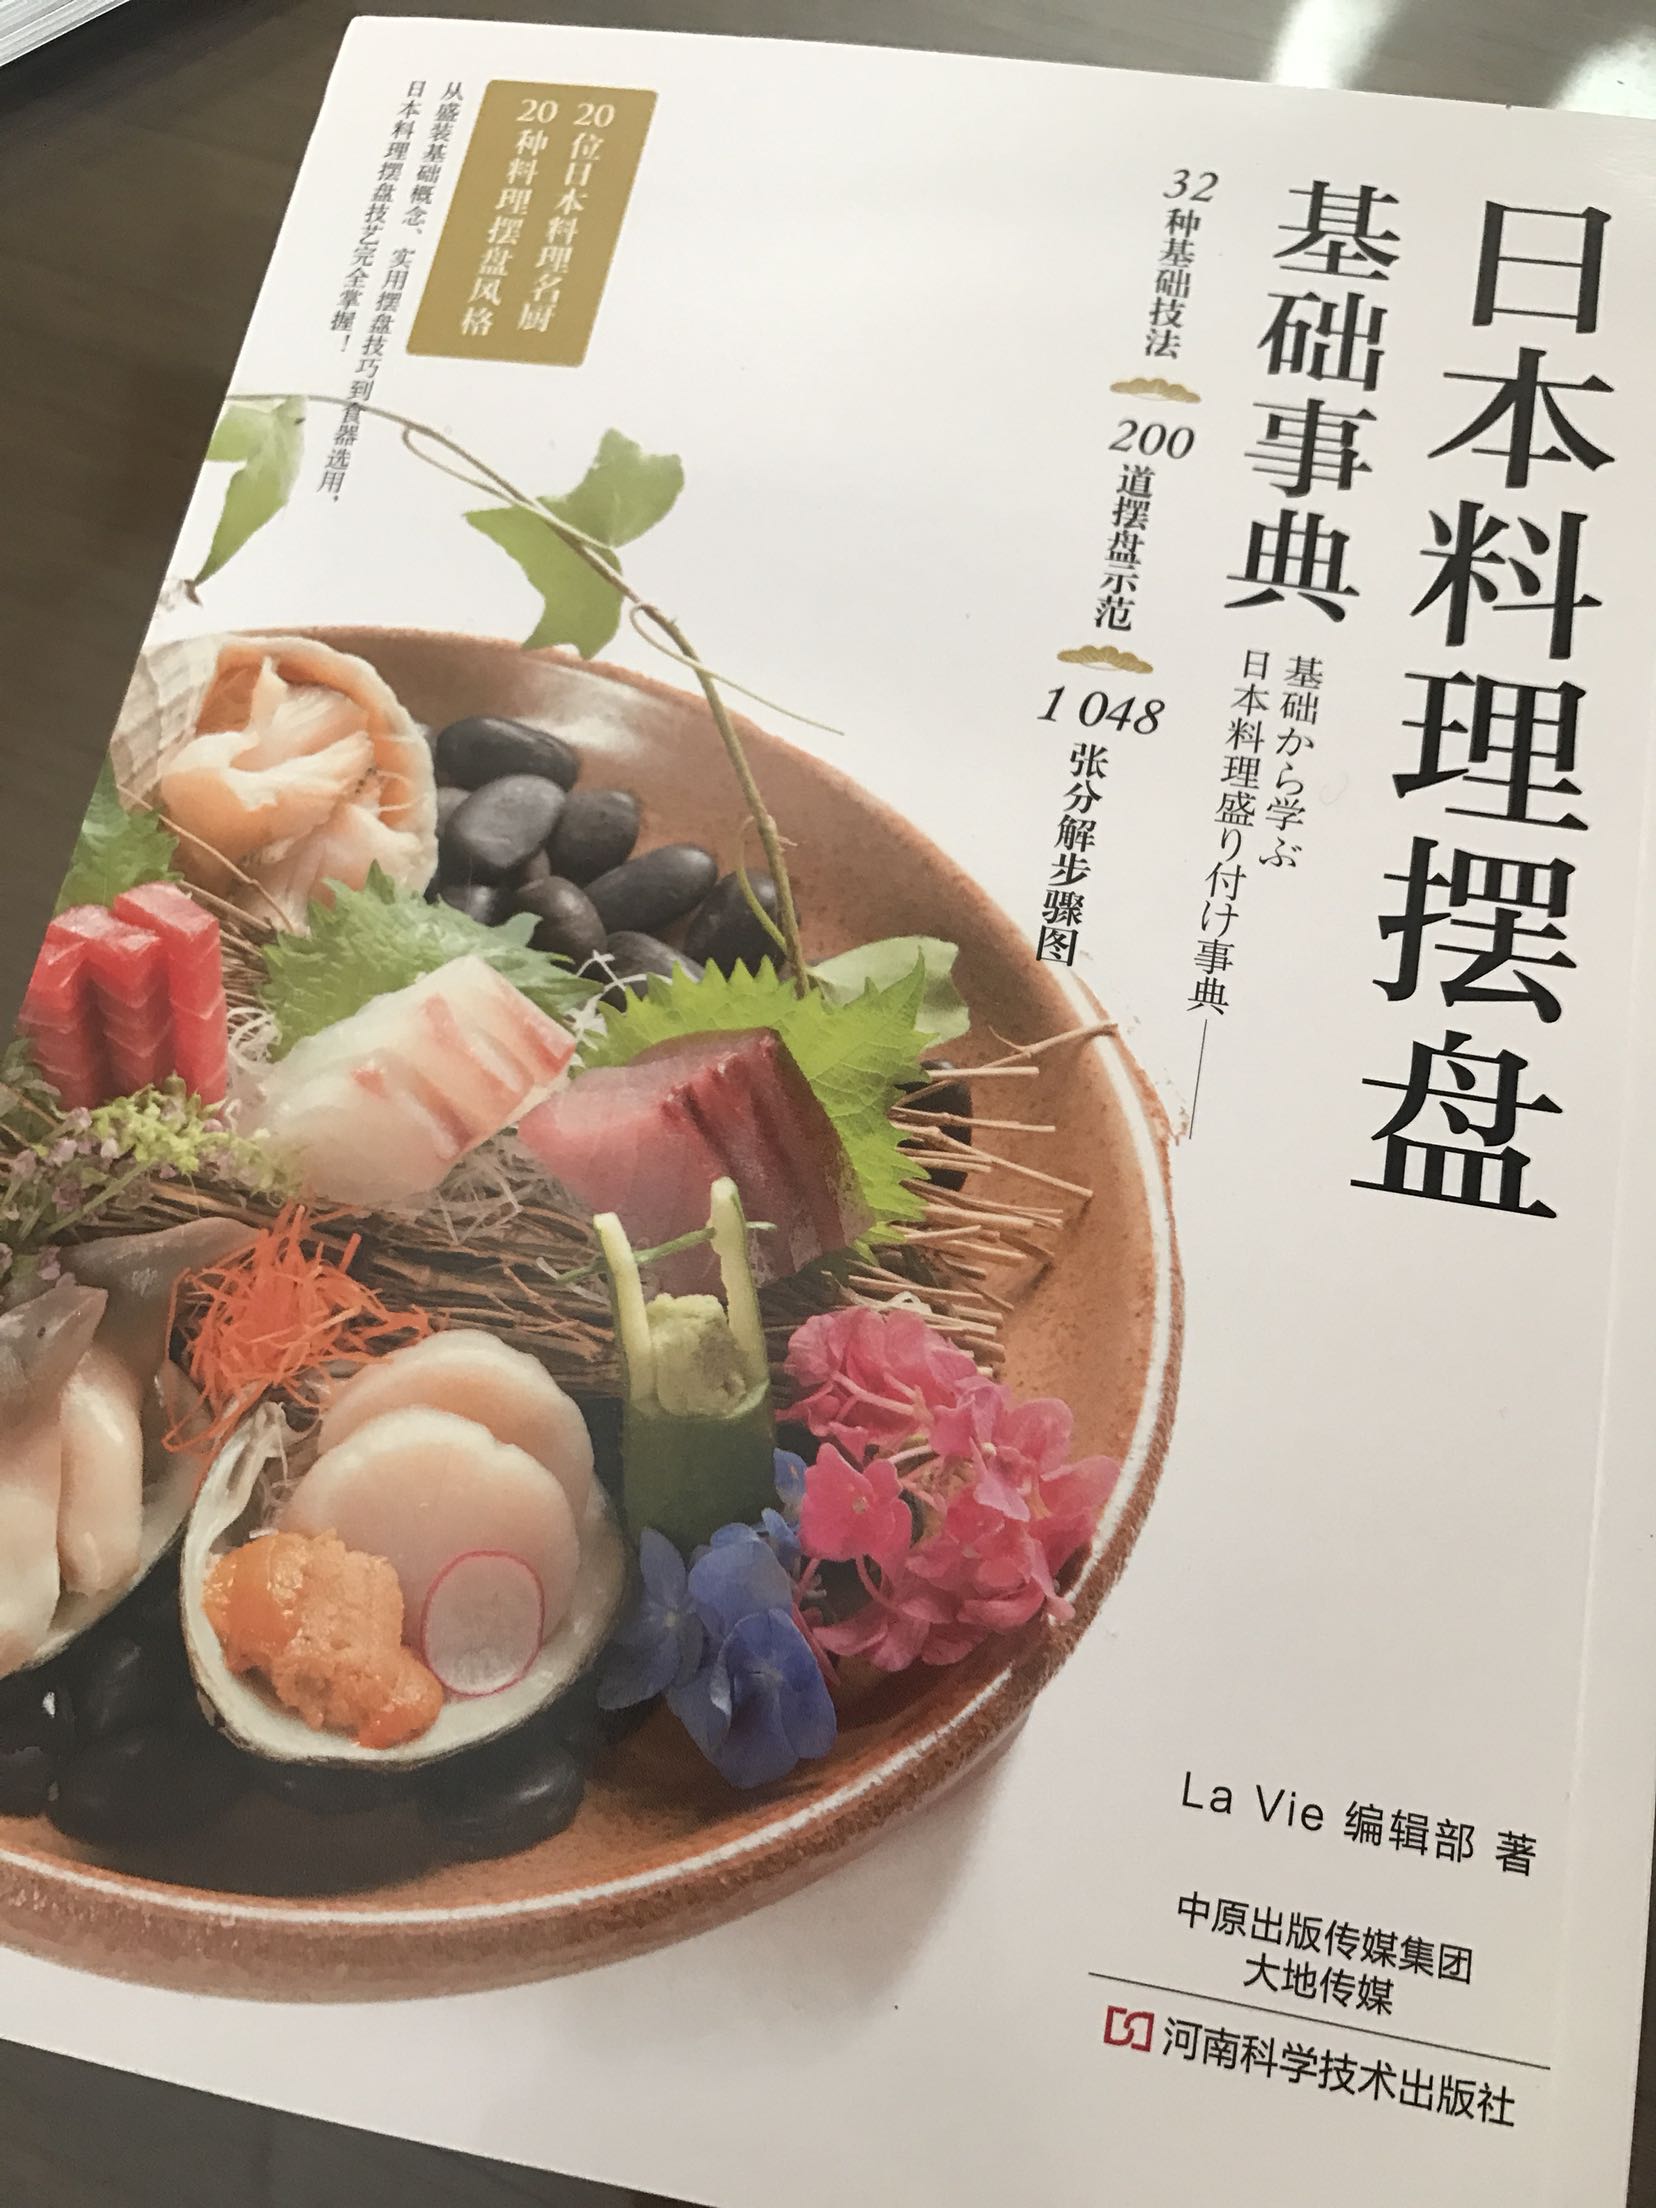 对了解下日本饮食文化有帮助